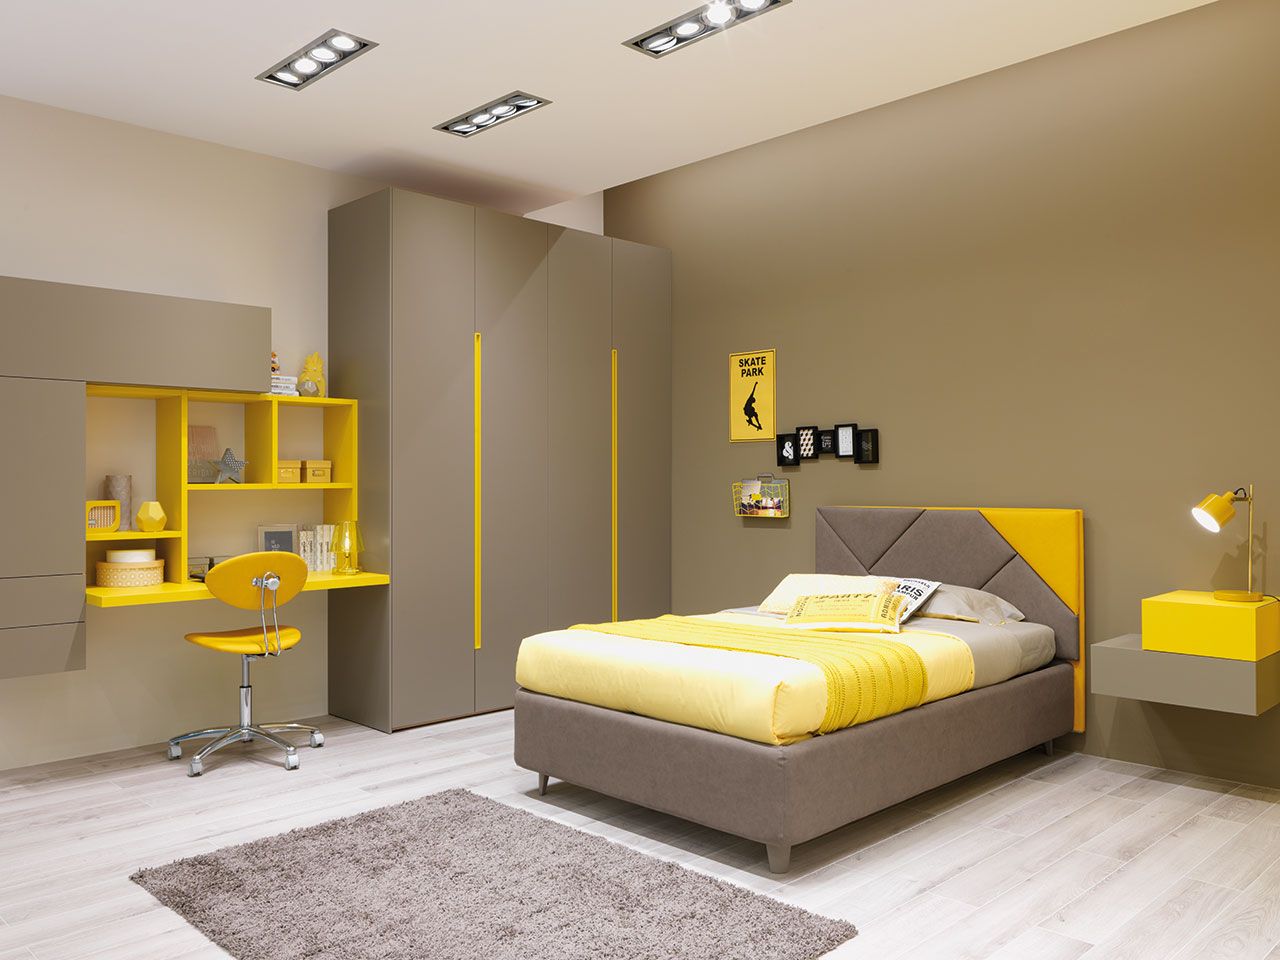 Thiết kế phòng ngủ với màu sắc tương phản hiện đại, tinh tế 